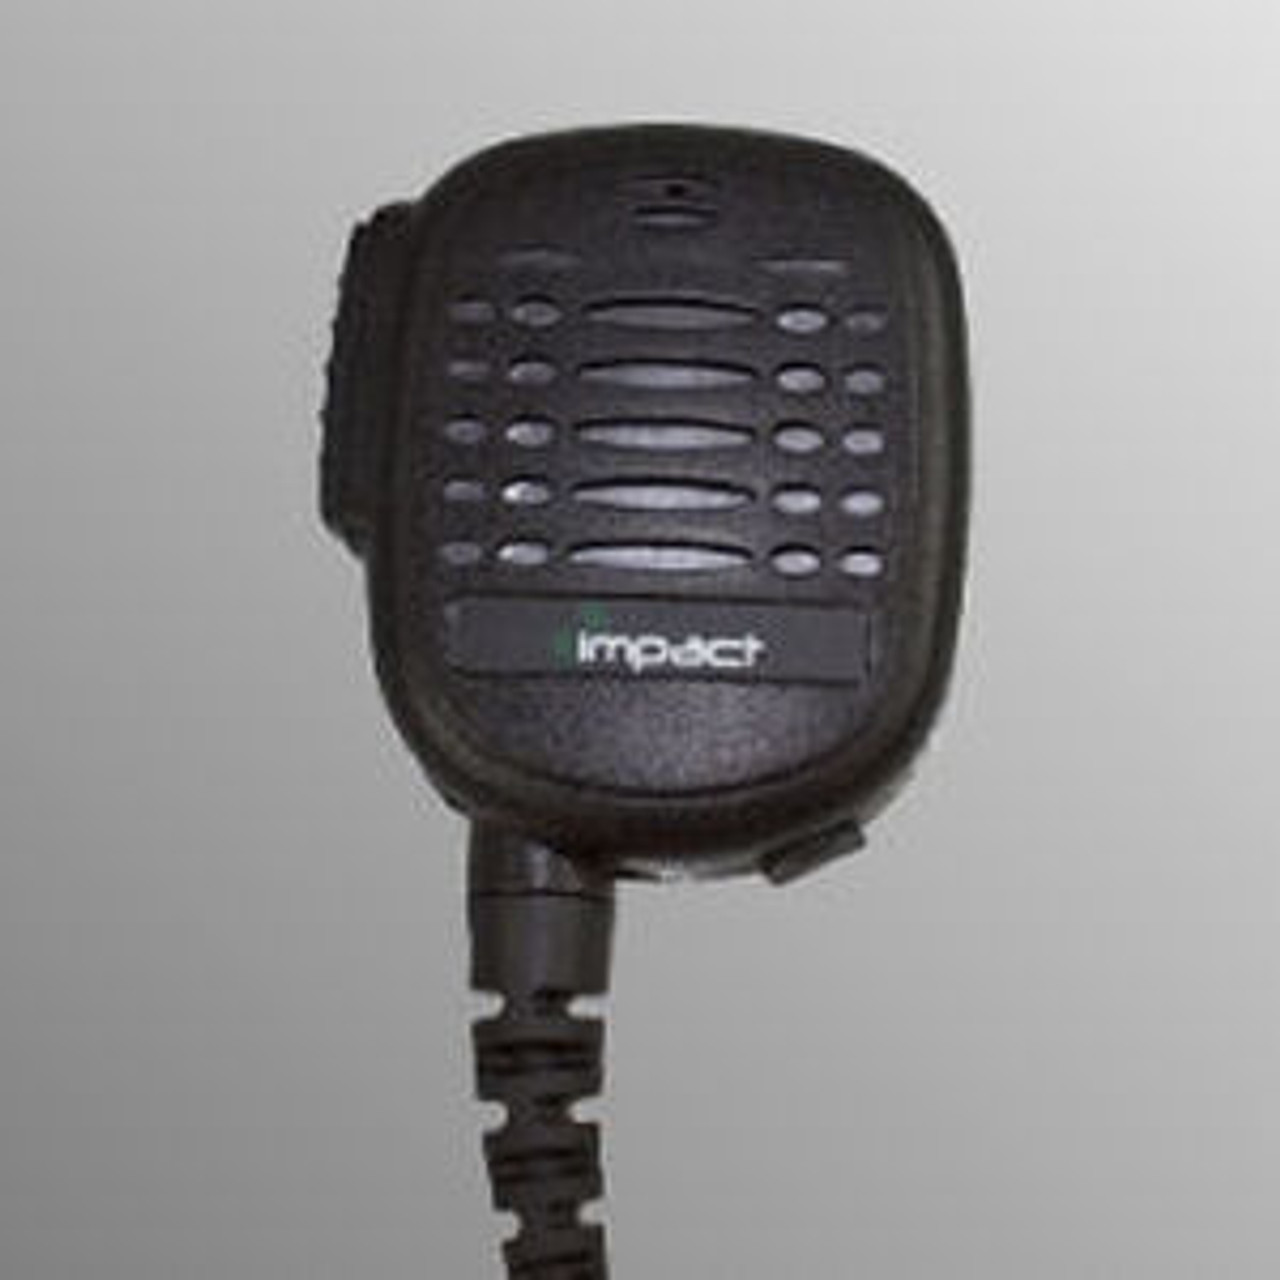 HYT / Hytera PD502 Noise Canceling Speaker Mic.